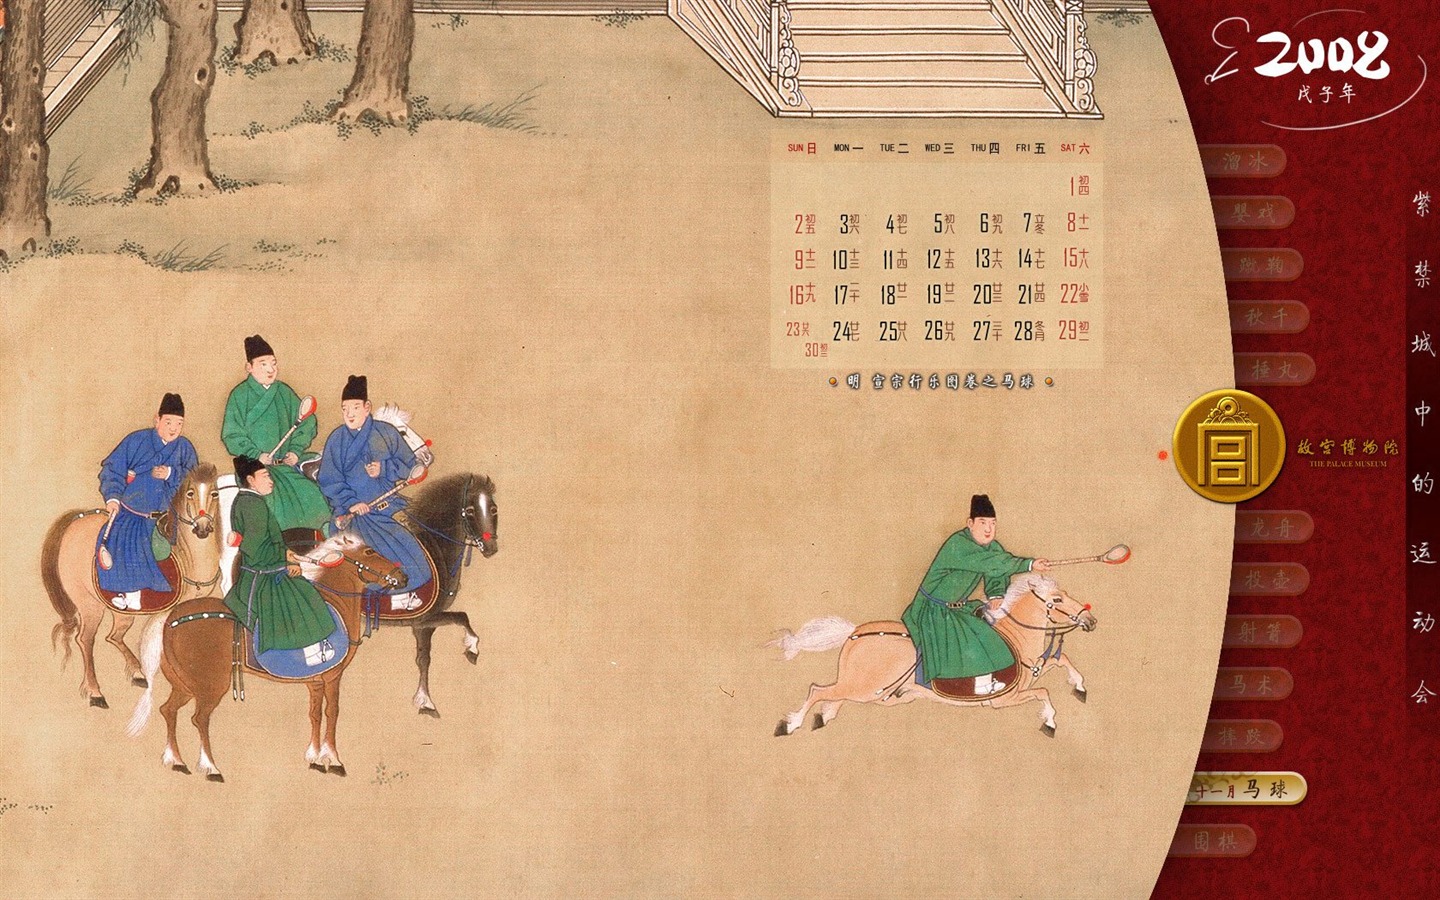 北京故宫博物院 文物展壁纸(二)20 - 1440x900